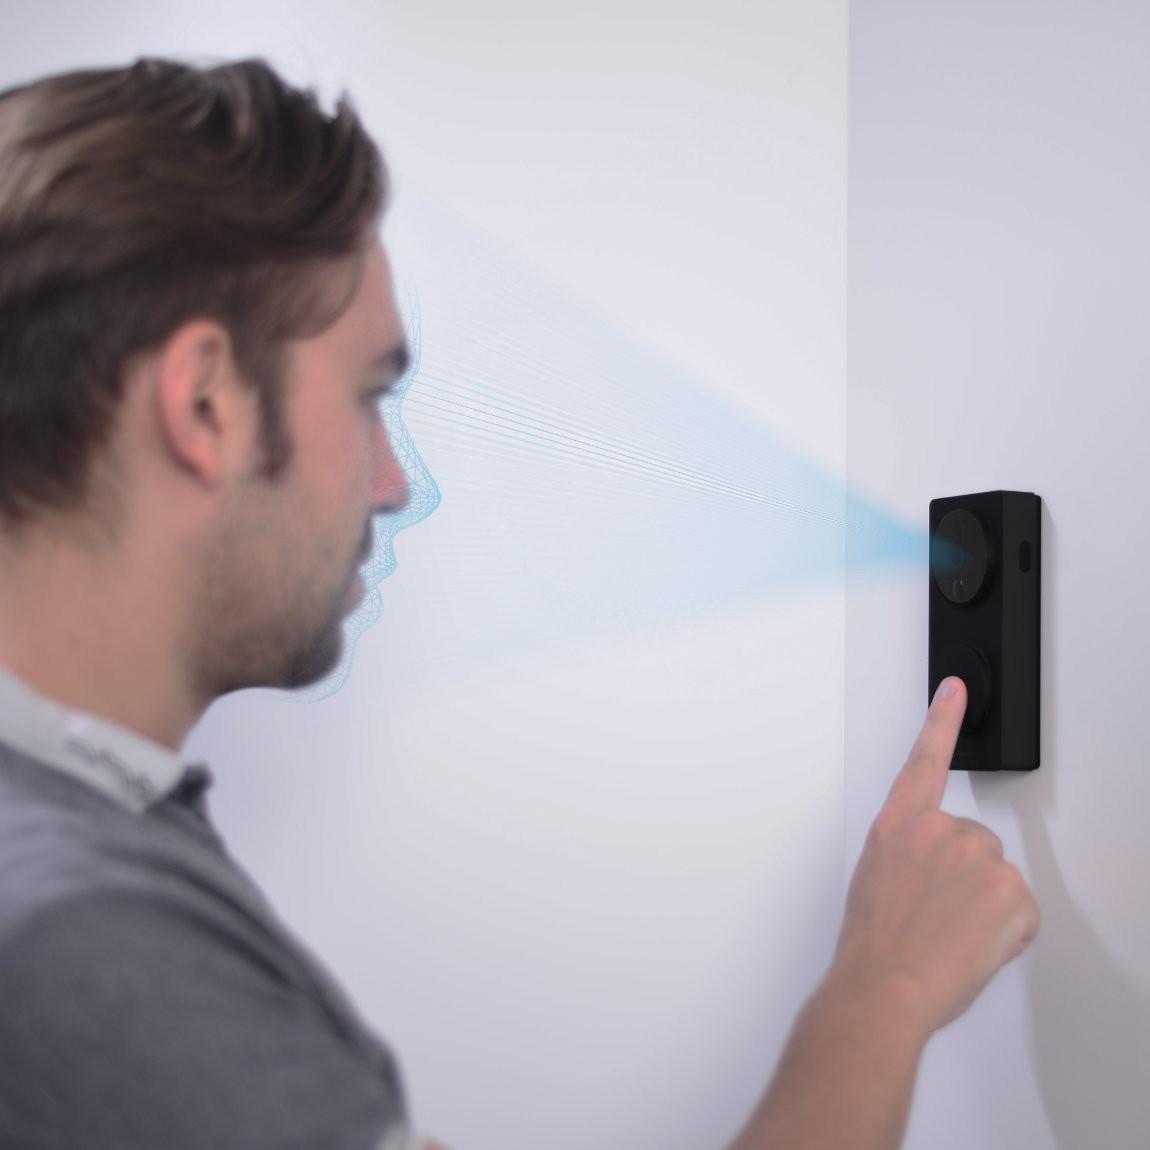 Aqara Smart Video Doorbell G4 - Smarte Videotürklingel